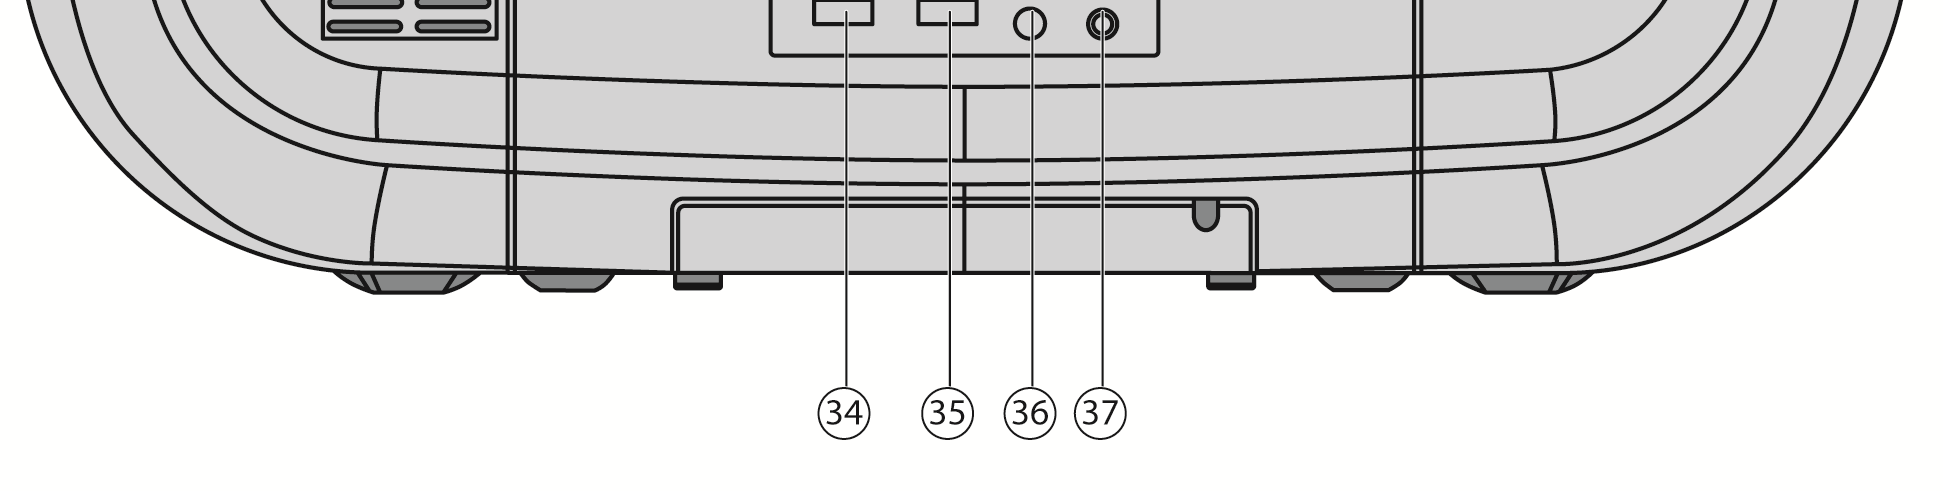 FR Rückseite NL 34. Schalter BEAT CUT: Rauschunterdrückung (Radiofunktion) 35.